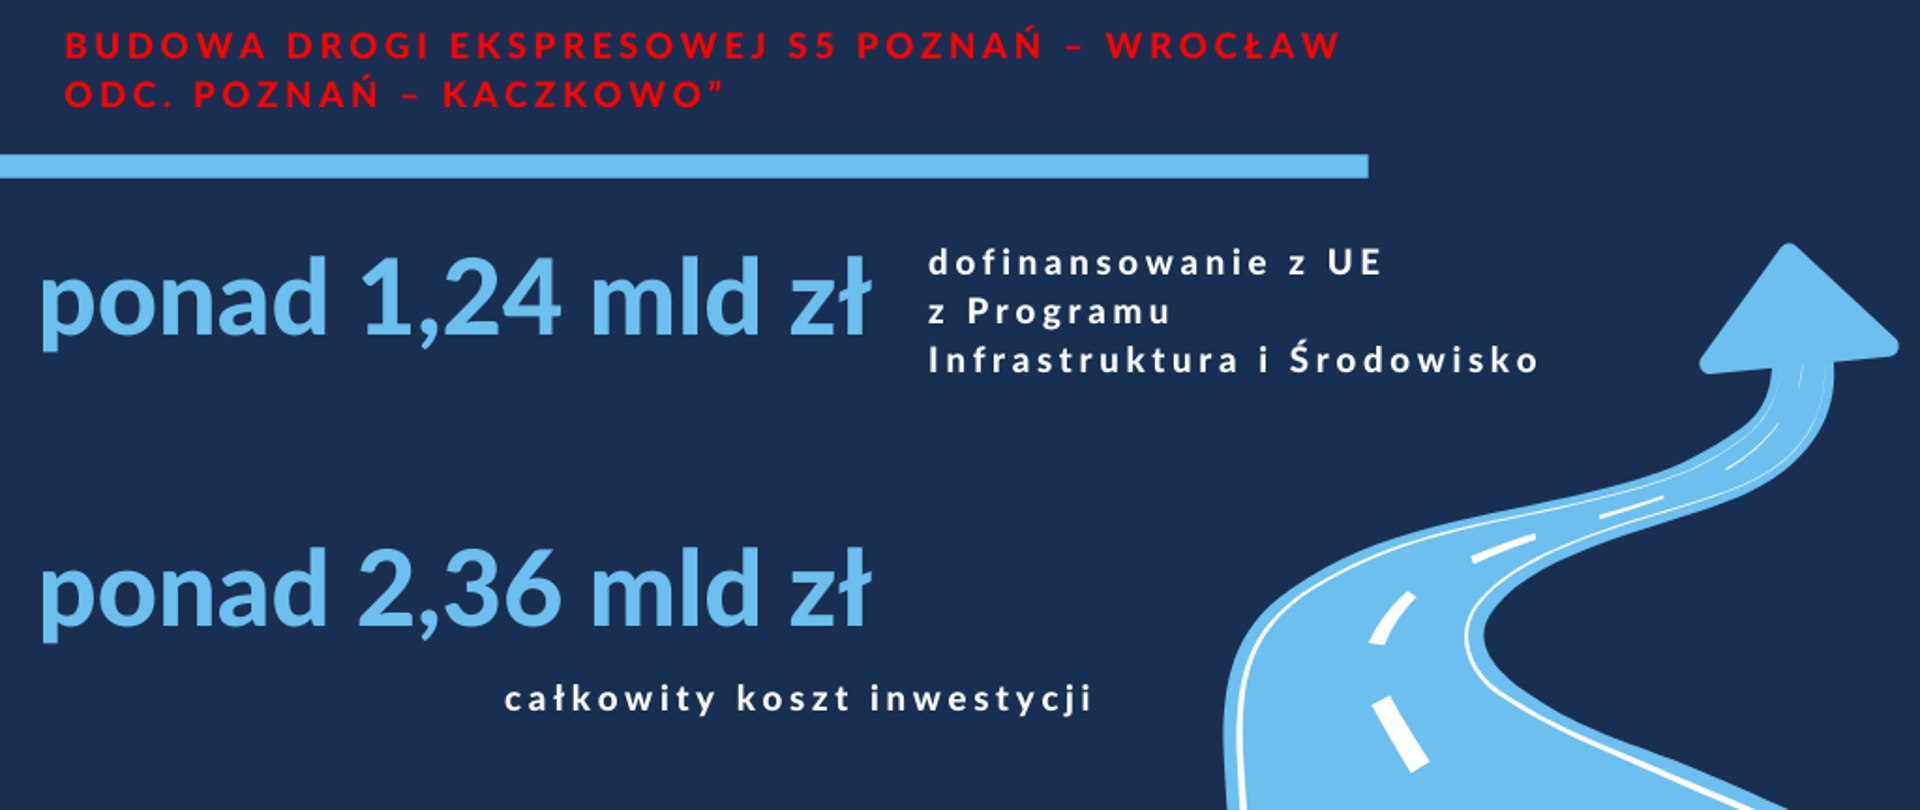 Grafika. Na środku napis „Budowa drogi ekspresowej S5 Poznań – Wrocław, odc. Poznań – Kaczkowo”, ponad 1,24 mld zł dofinansowania z UE z Programu Infrastruktura i Środowisko, ponad 2,36 mld zł całkowity koszt inwestycji. Po prawej stronie rysunek przedstawiający drogę 